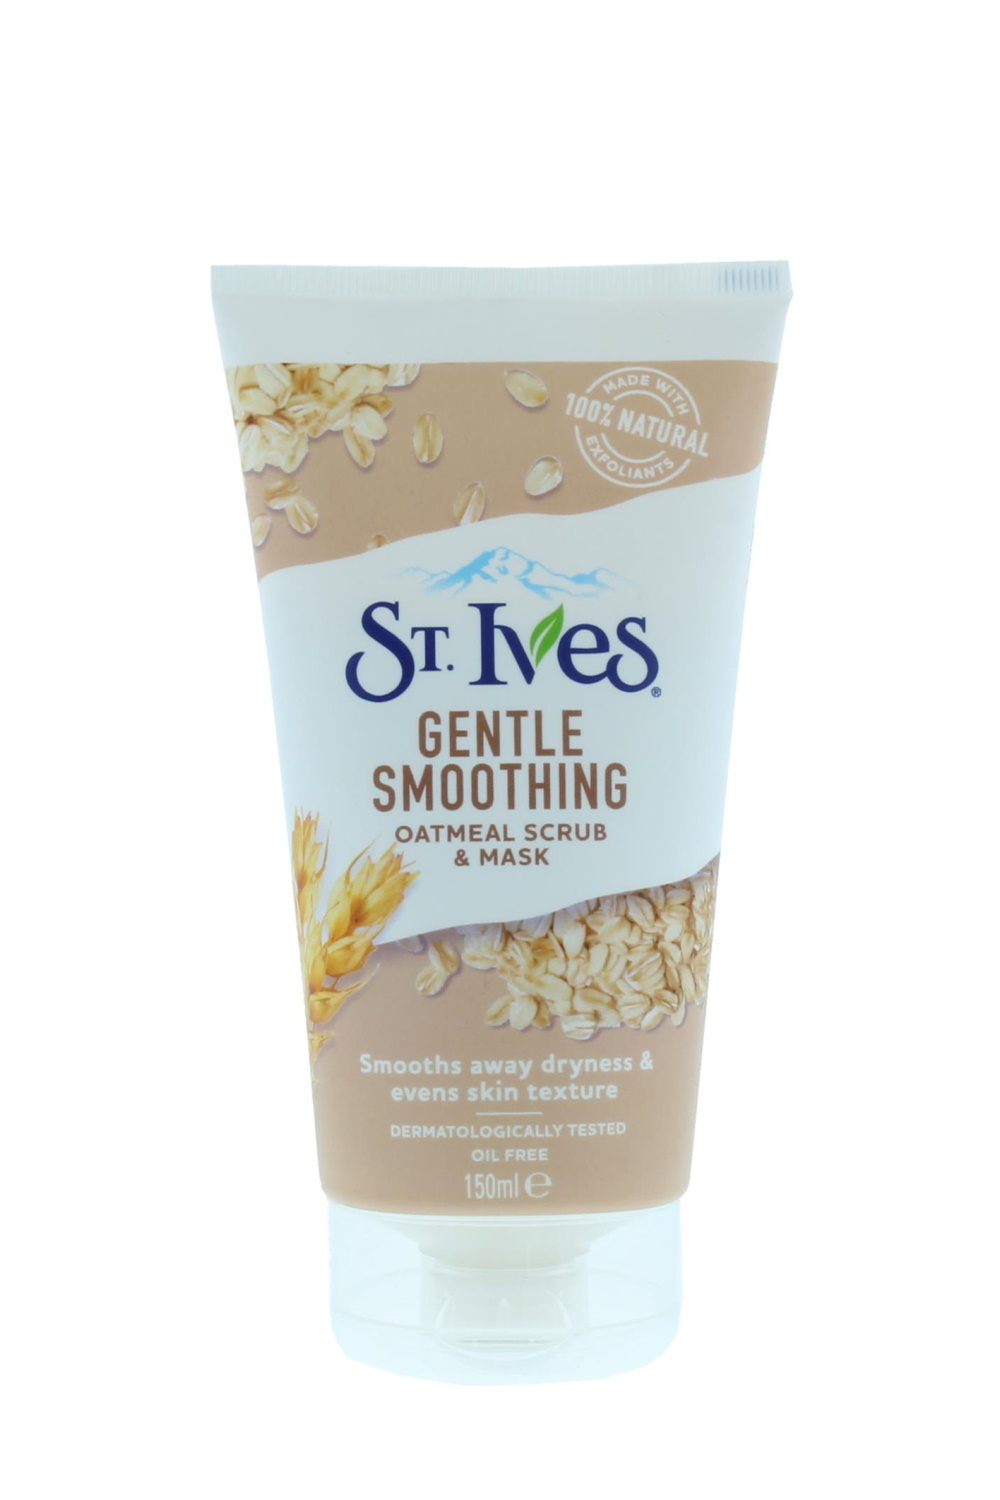 St Ives Gentle Smoothing Oatmeal Scrub Mask 150ml Stylishcare